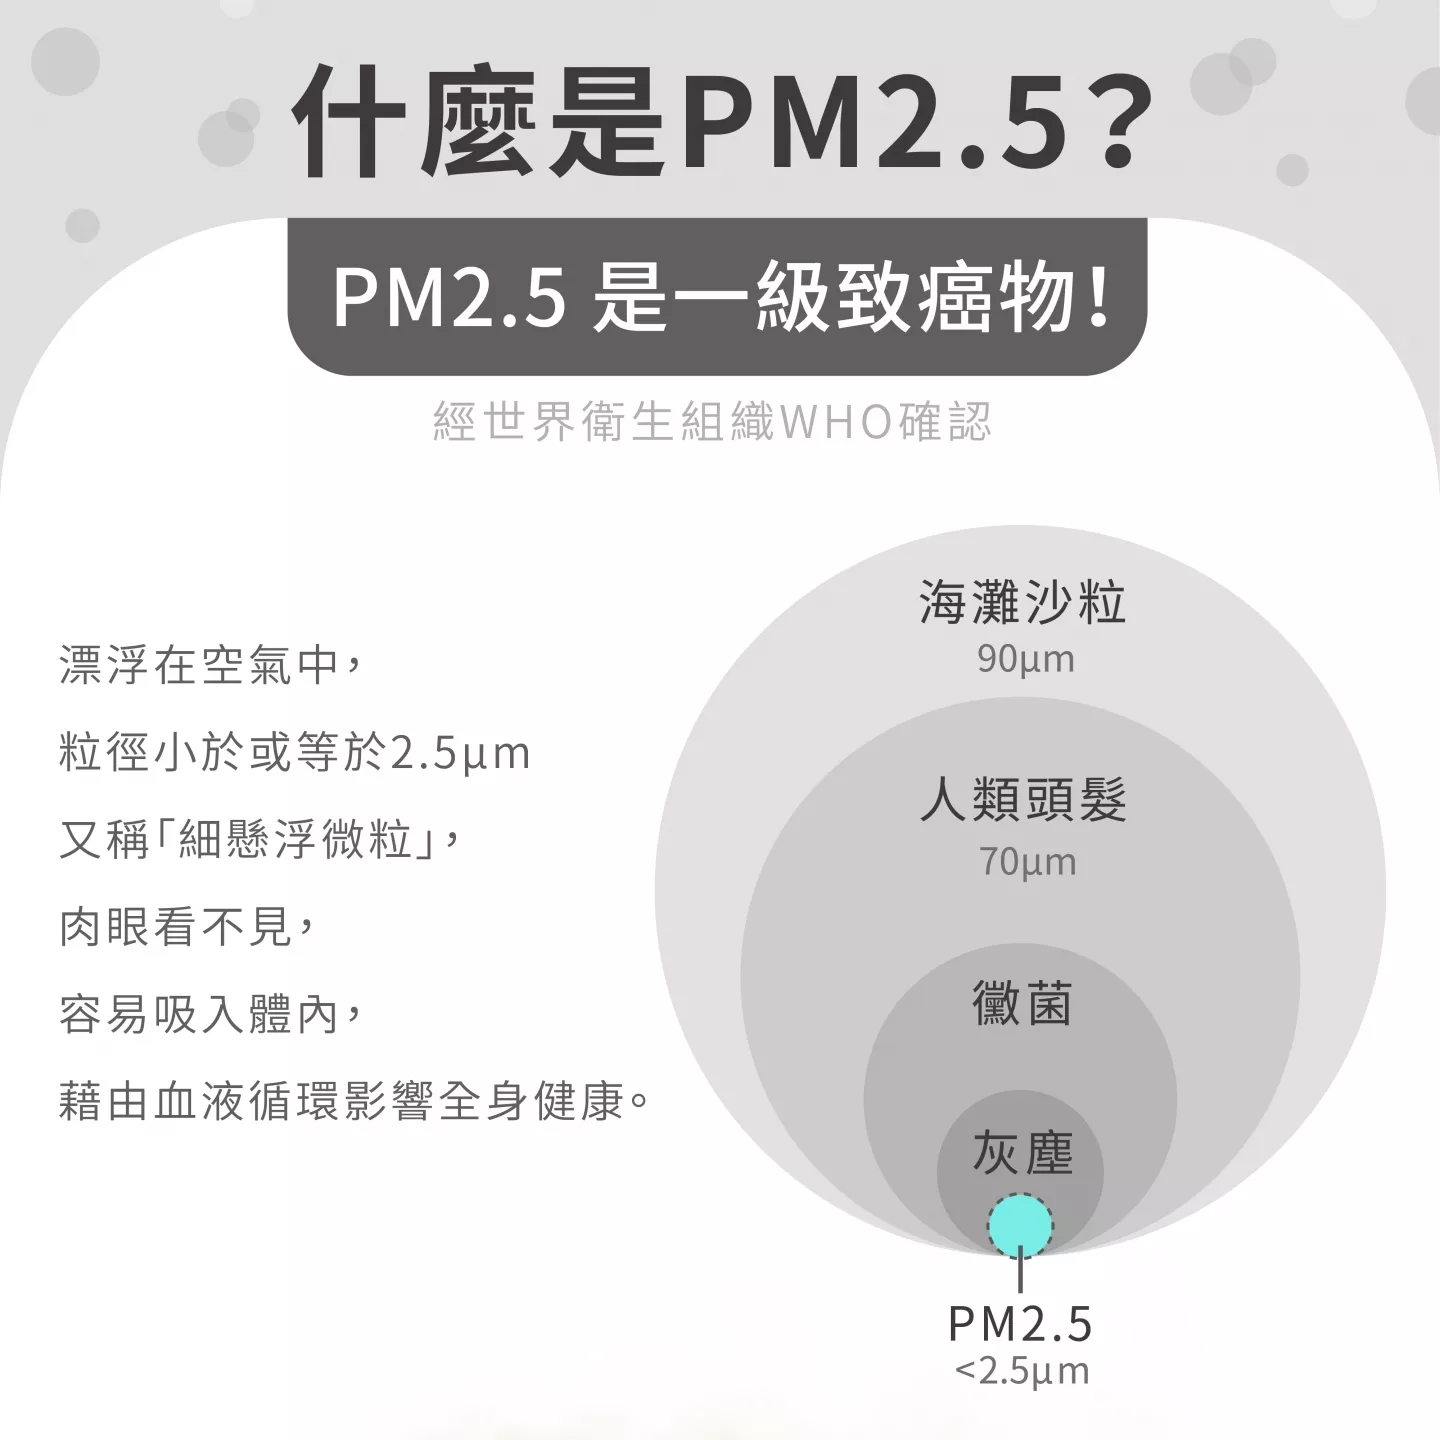 經世界衛生組織WHO確認 PM2.5 是一級致癌物